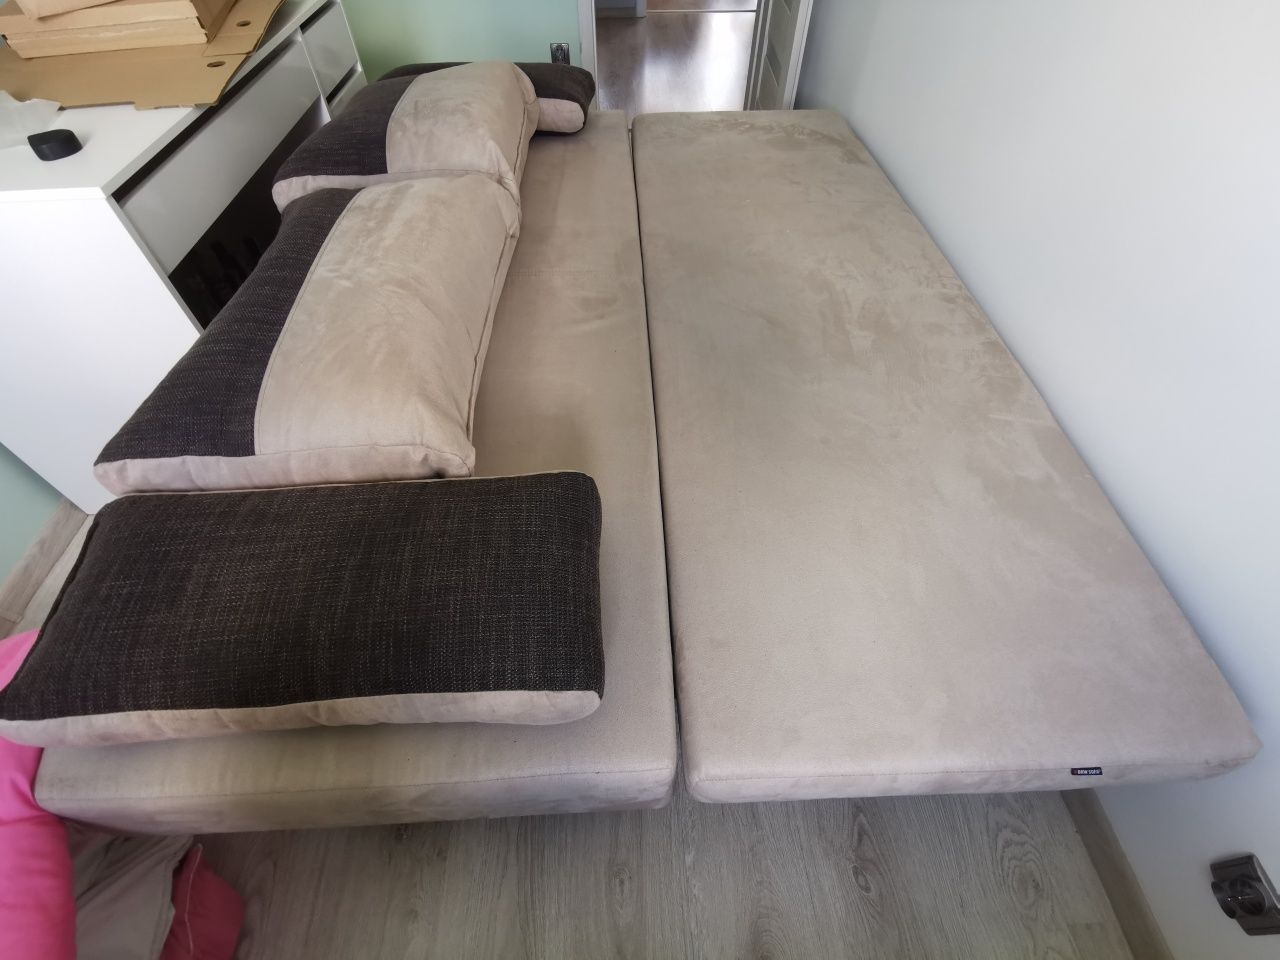 Łóżko kanapa w dobrym stanie nowoczesny styl